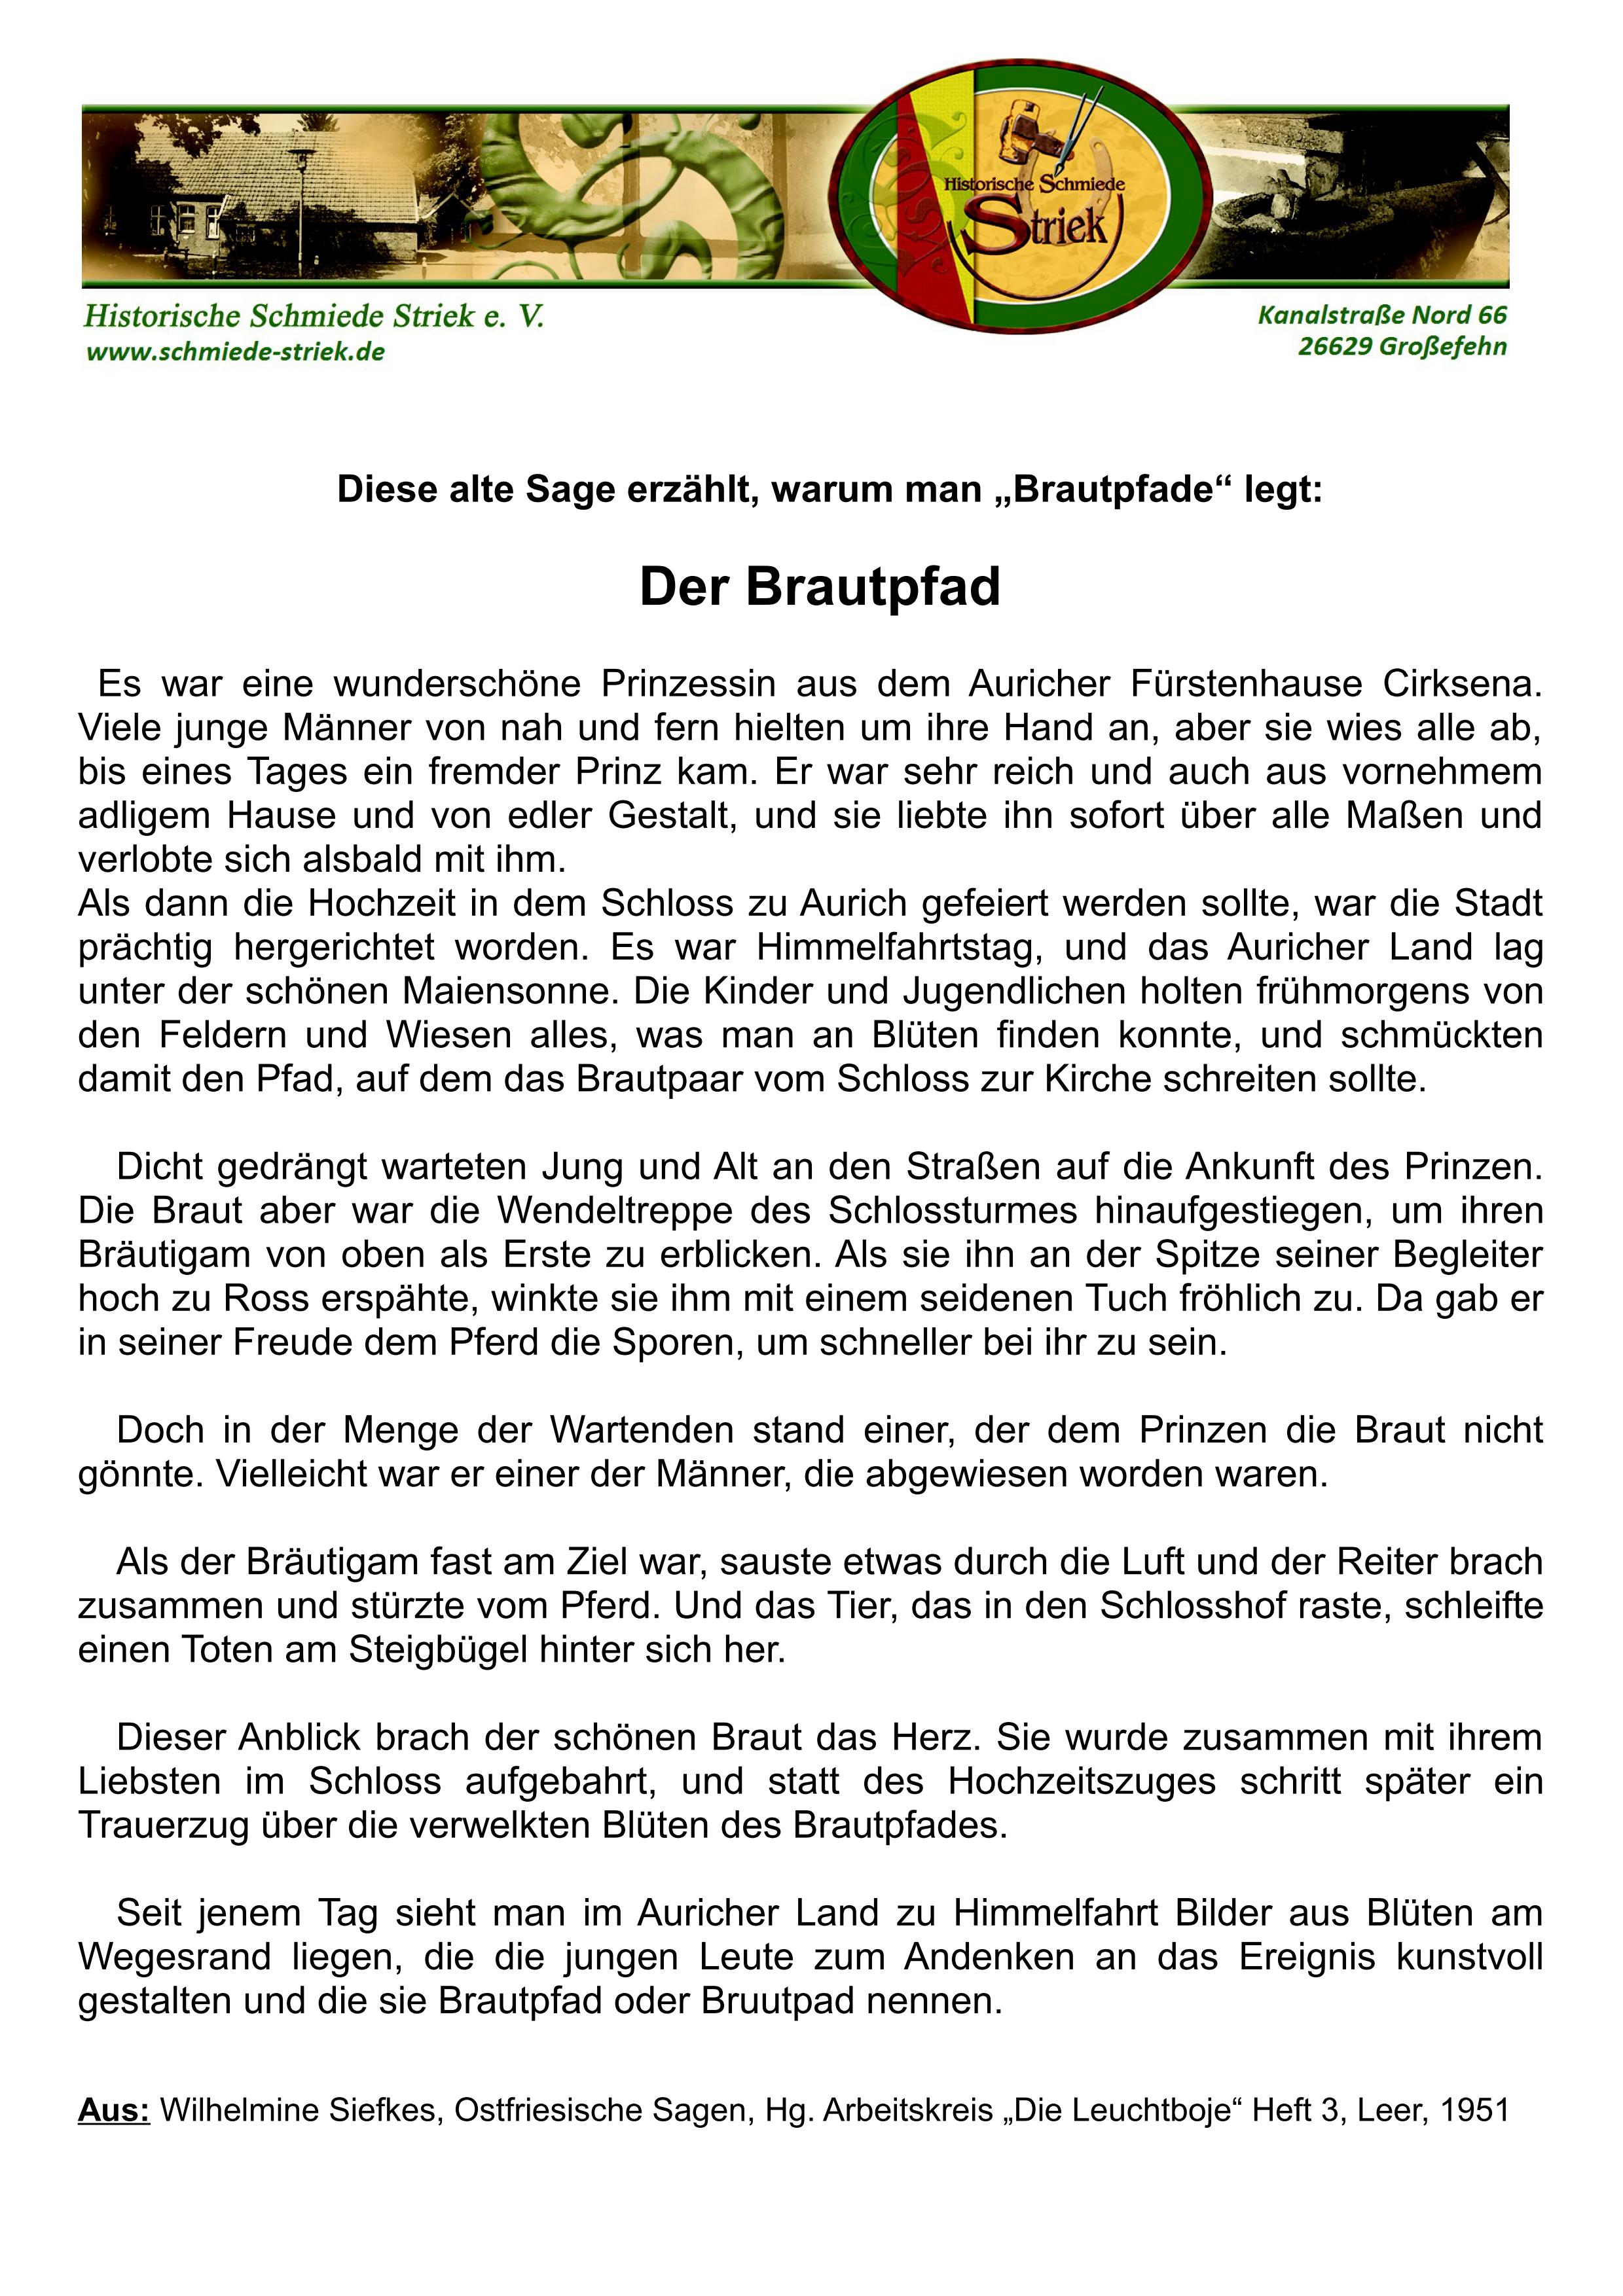 Brautpfad Sage mit Logo Schmiede 01